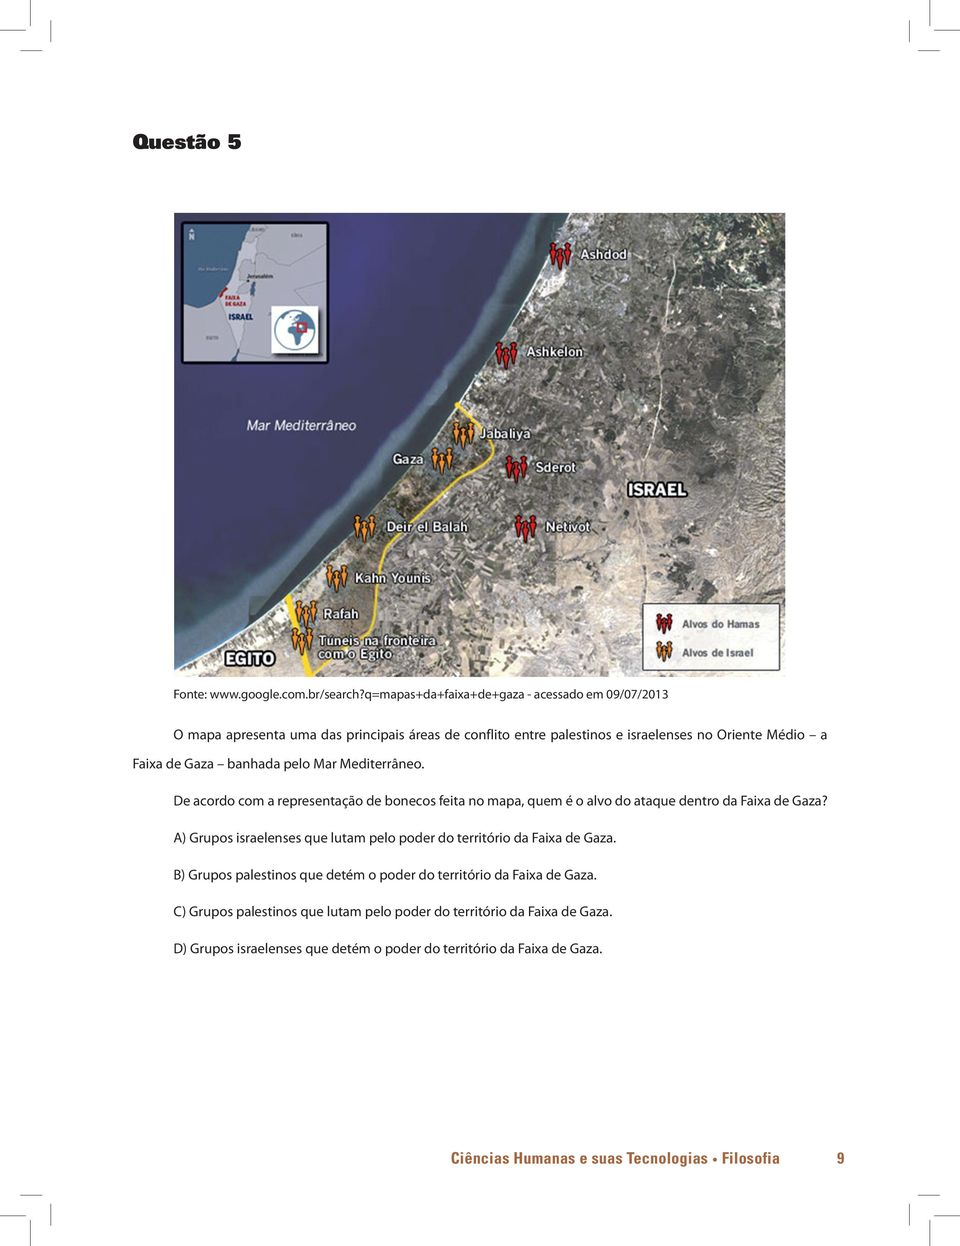 banhada pelo Mar Mediterrâneo. De acordo com a representação de bonecos feita no mapa, quem é o alvo do ataque dentro da Faixa de Gaza?